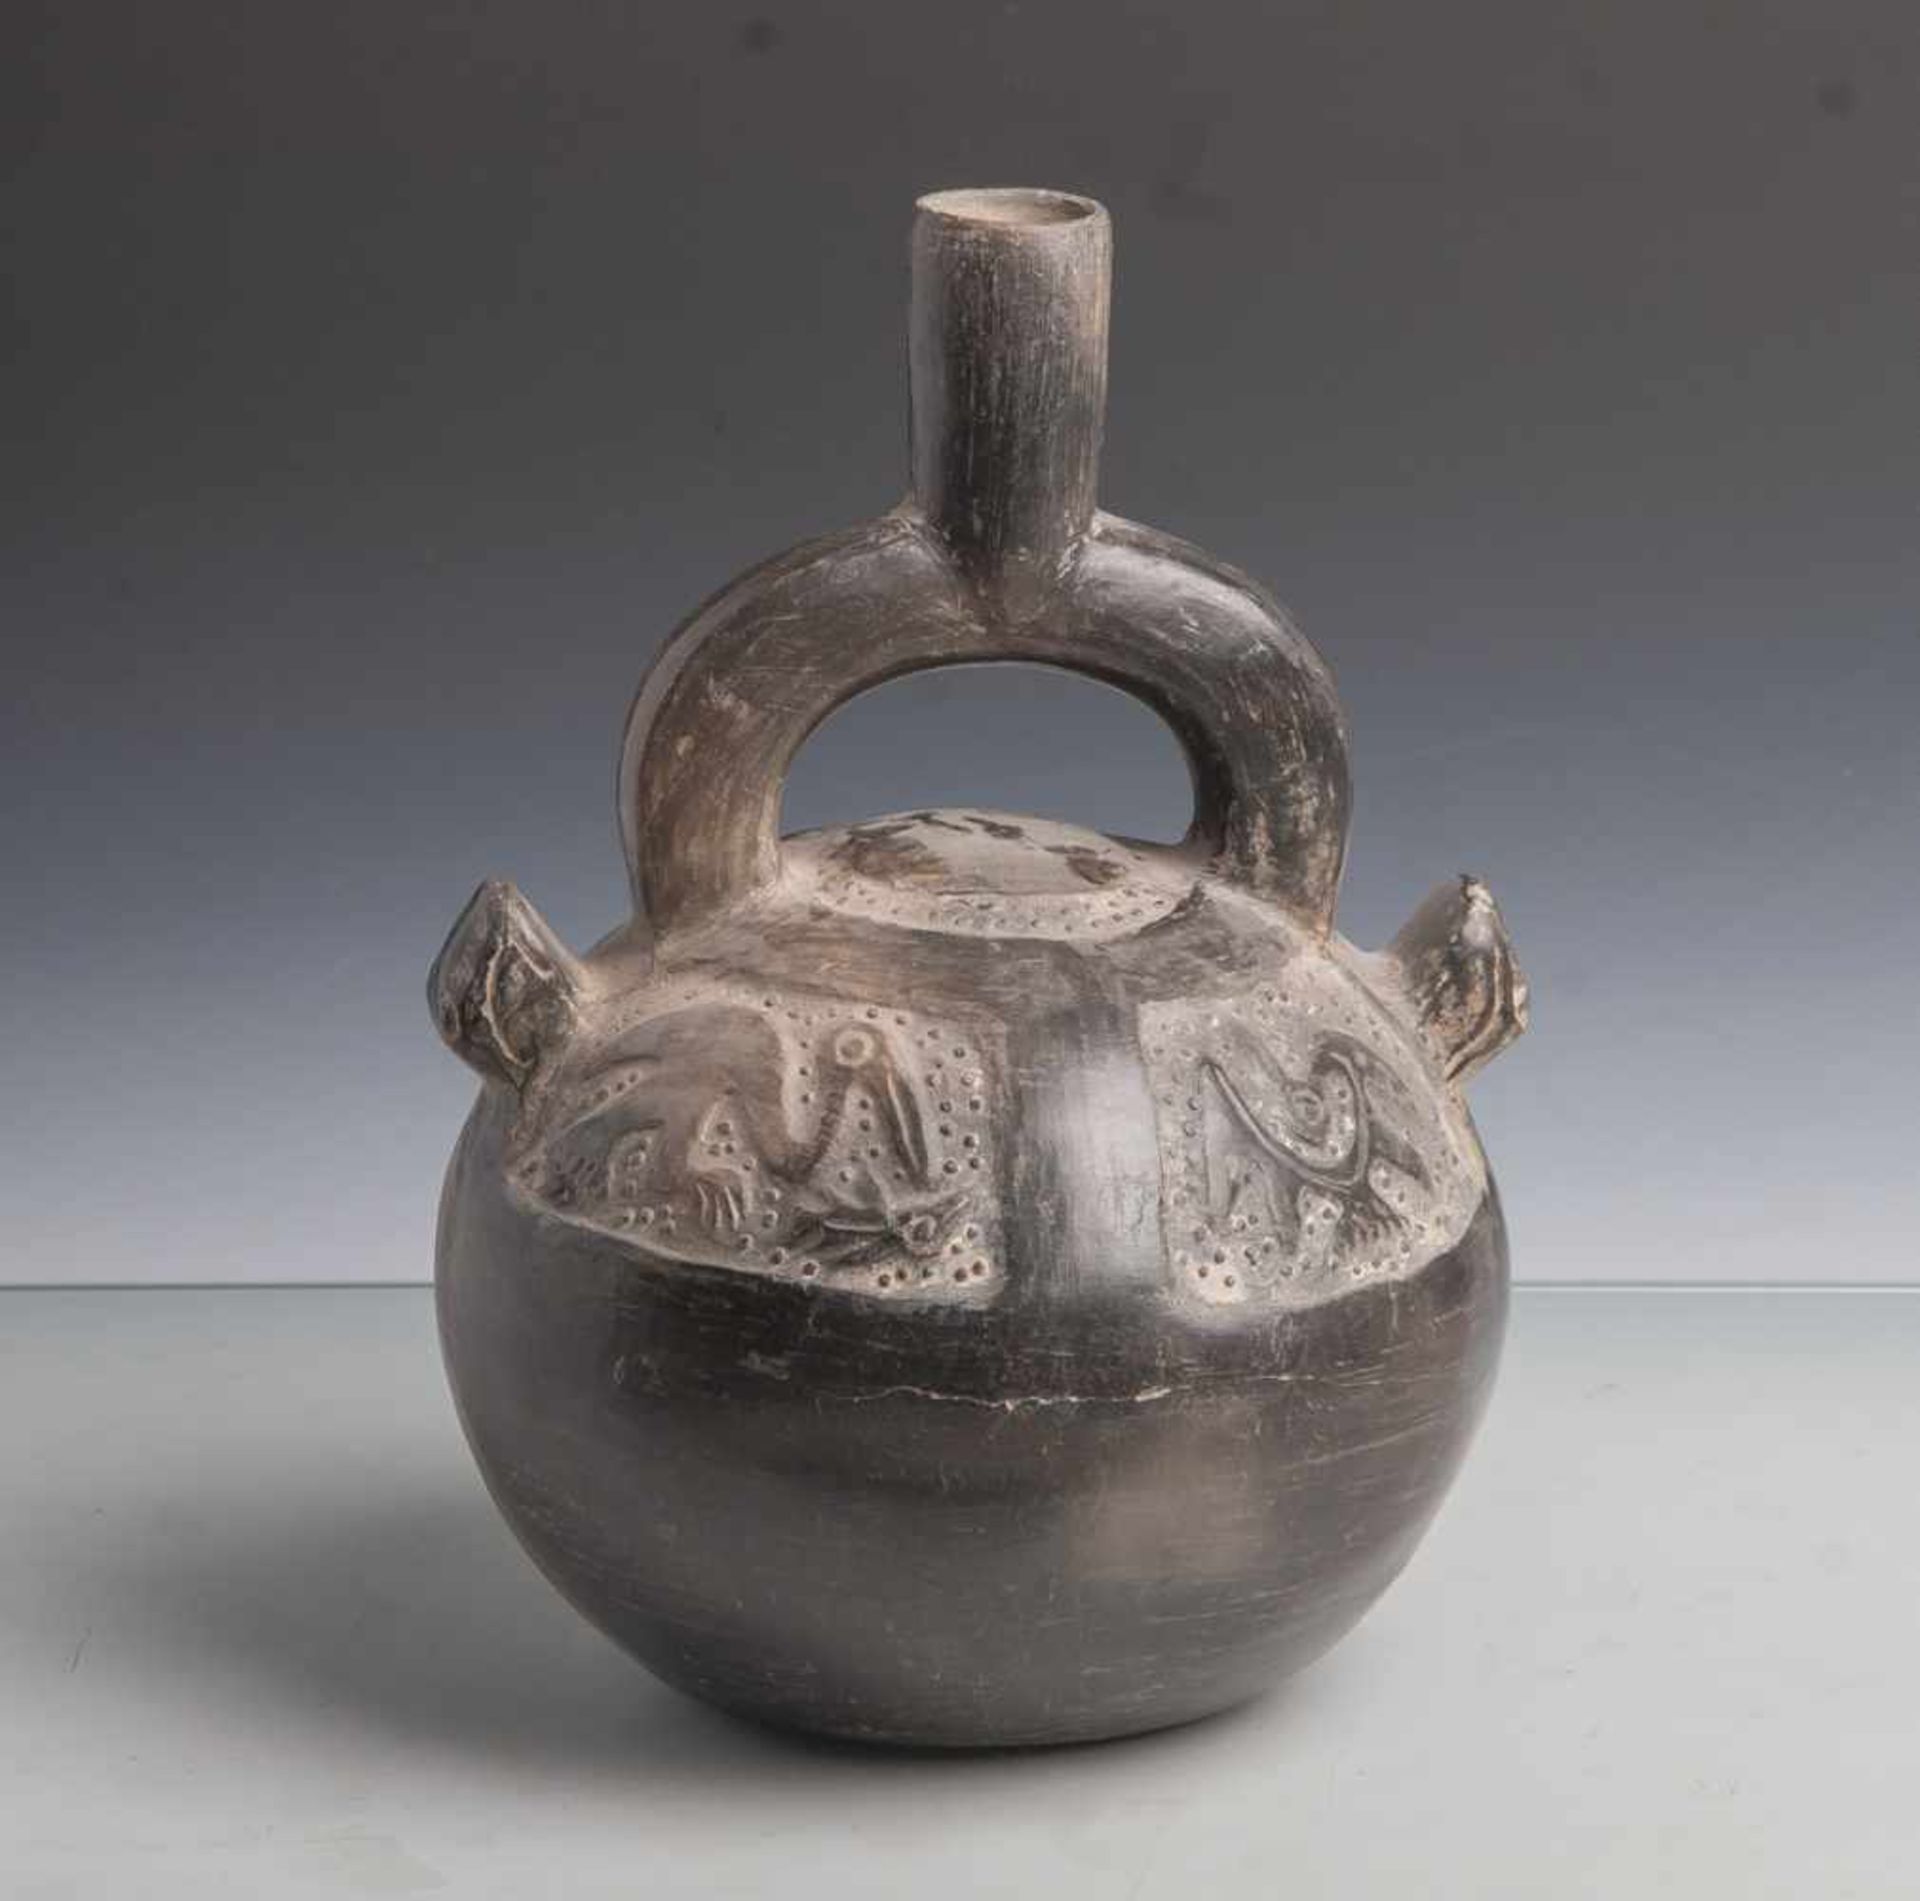 Kugeliges Steigbügelgefäß (Moche-Kultur), in der Wandung reliefartige Tierdarstellungen,schwarz